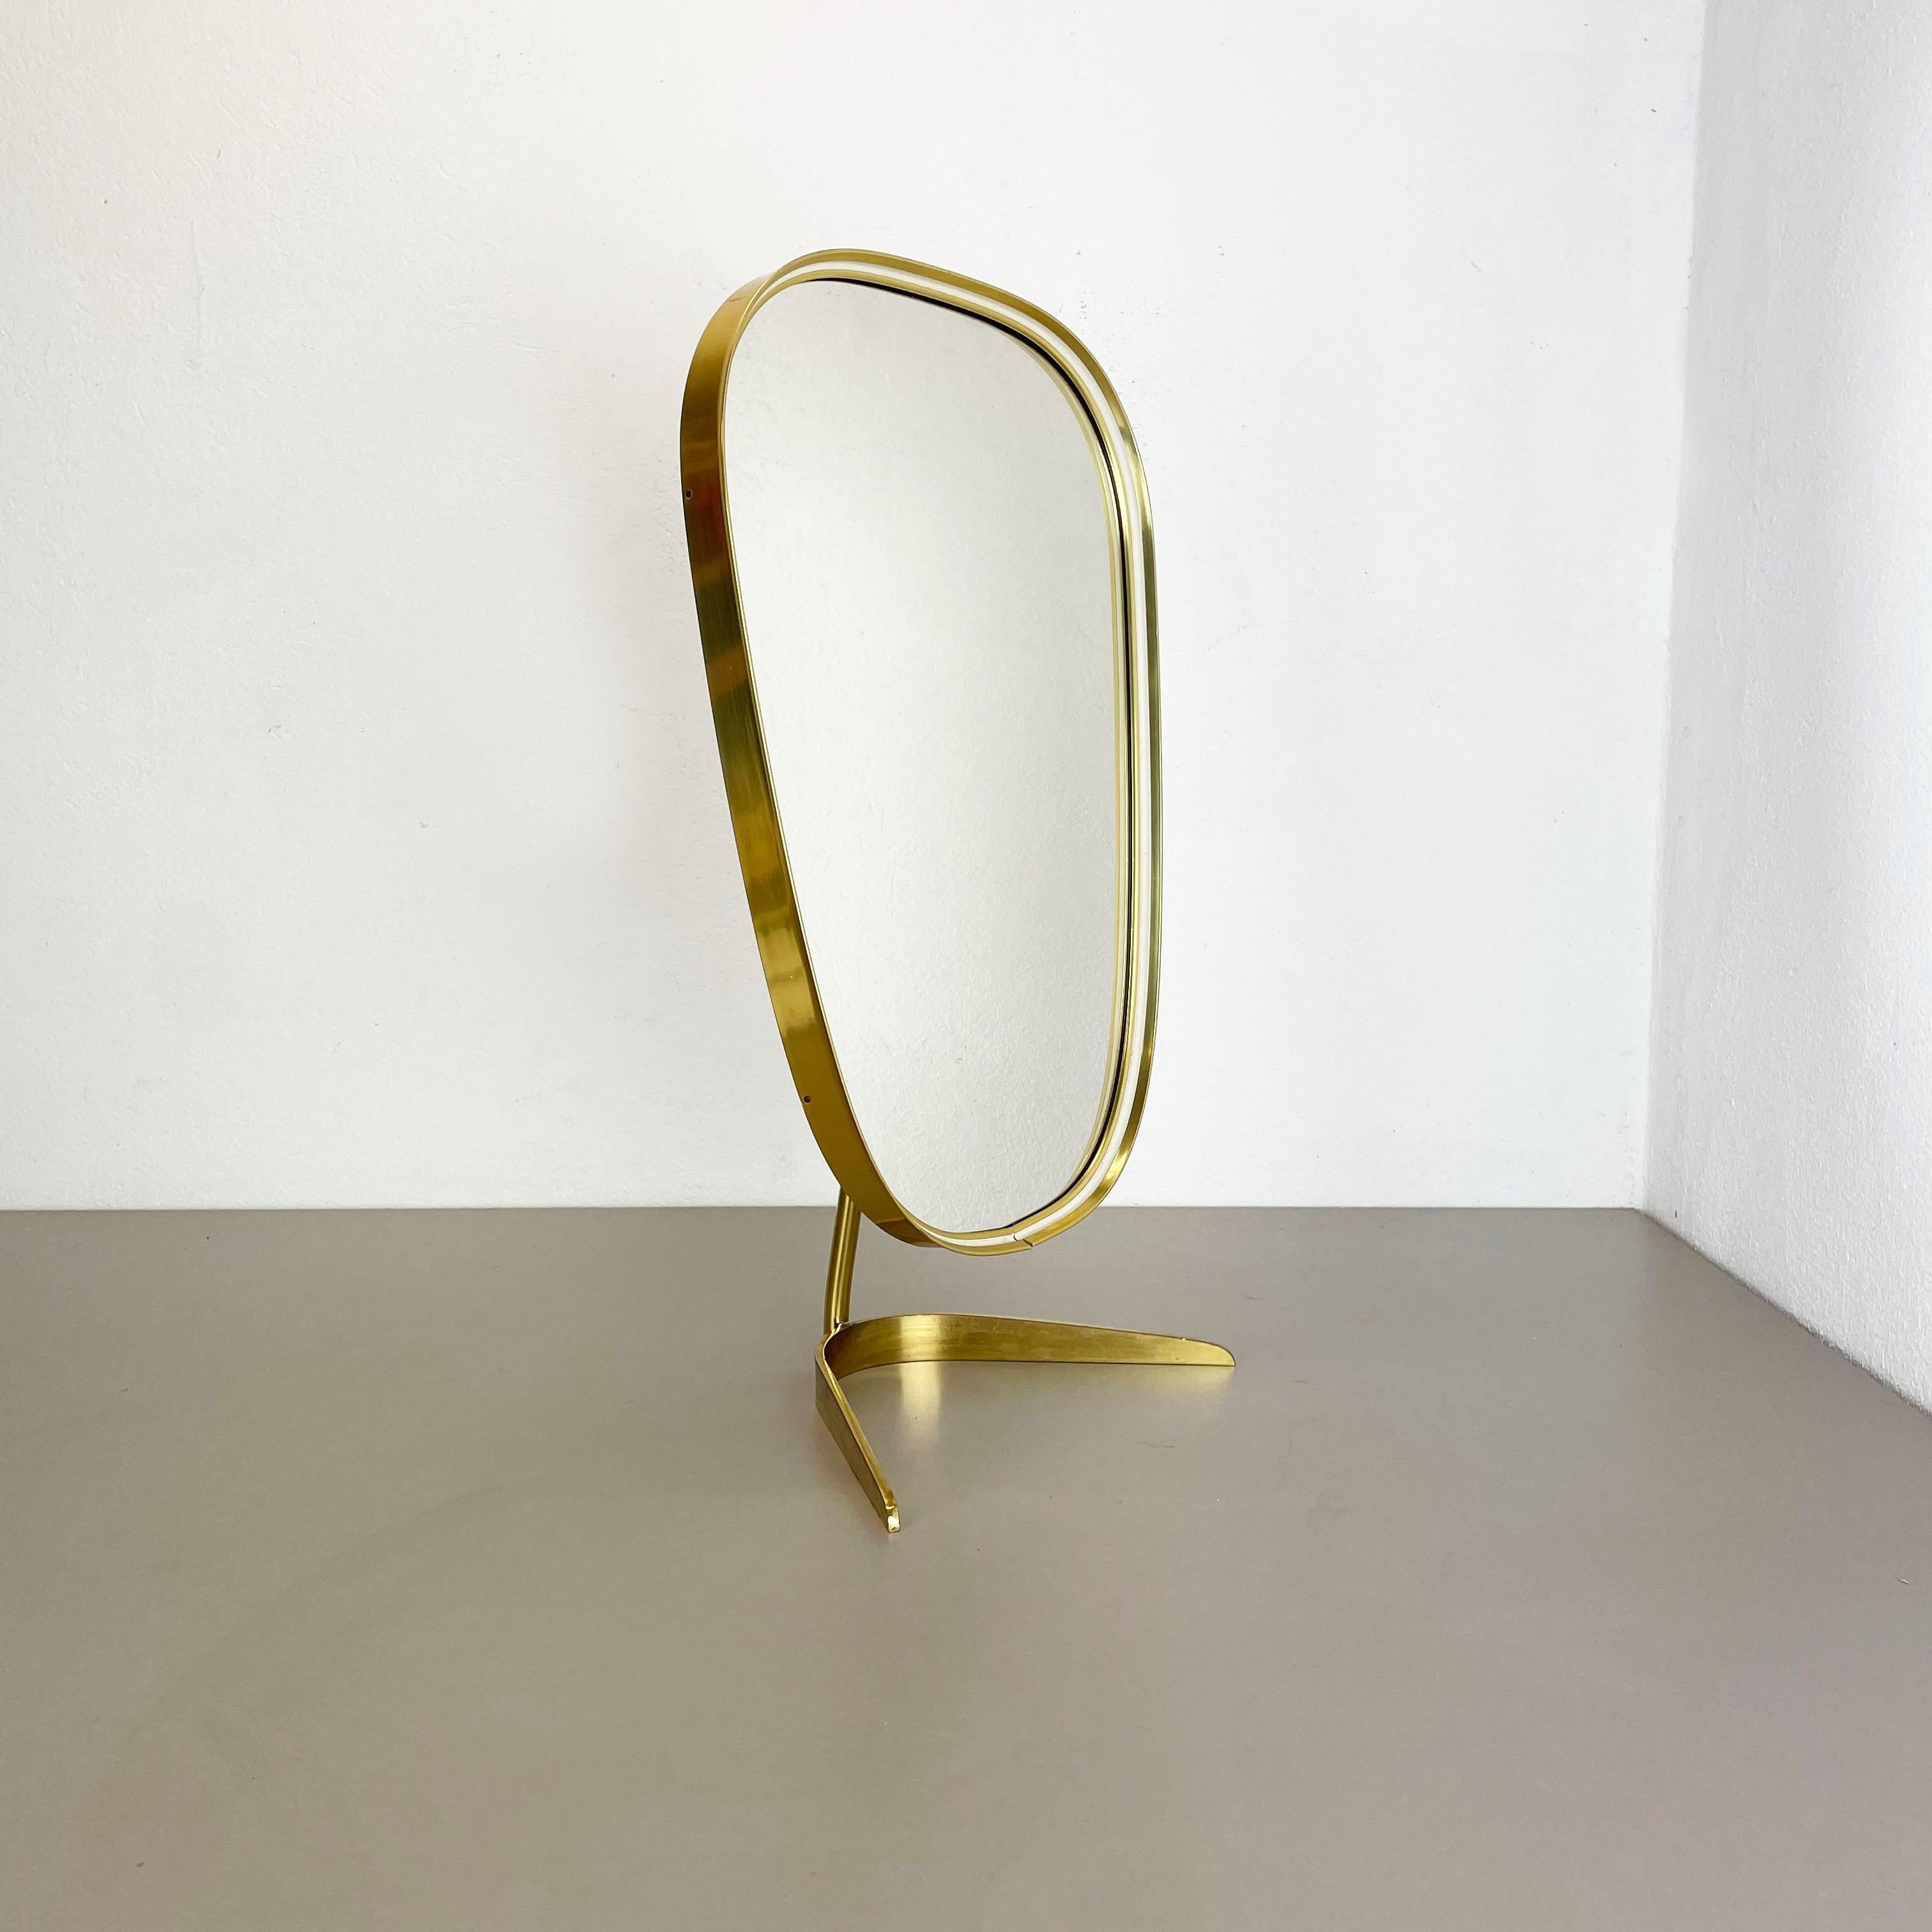 Article:

Table mirror


Producer:

Vereinigte Werkstätten München Münchener Zierspiegel


Origin:

Germany


Material:

Wood, glass, brass


Decade:

1950s


Description:

This original midcentury table mirror was